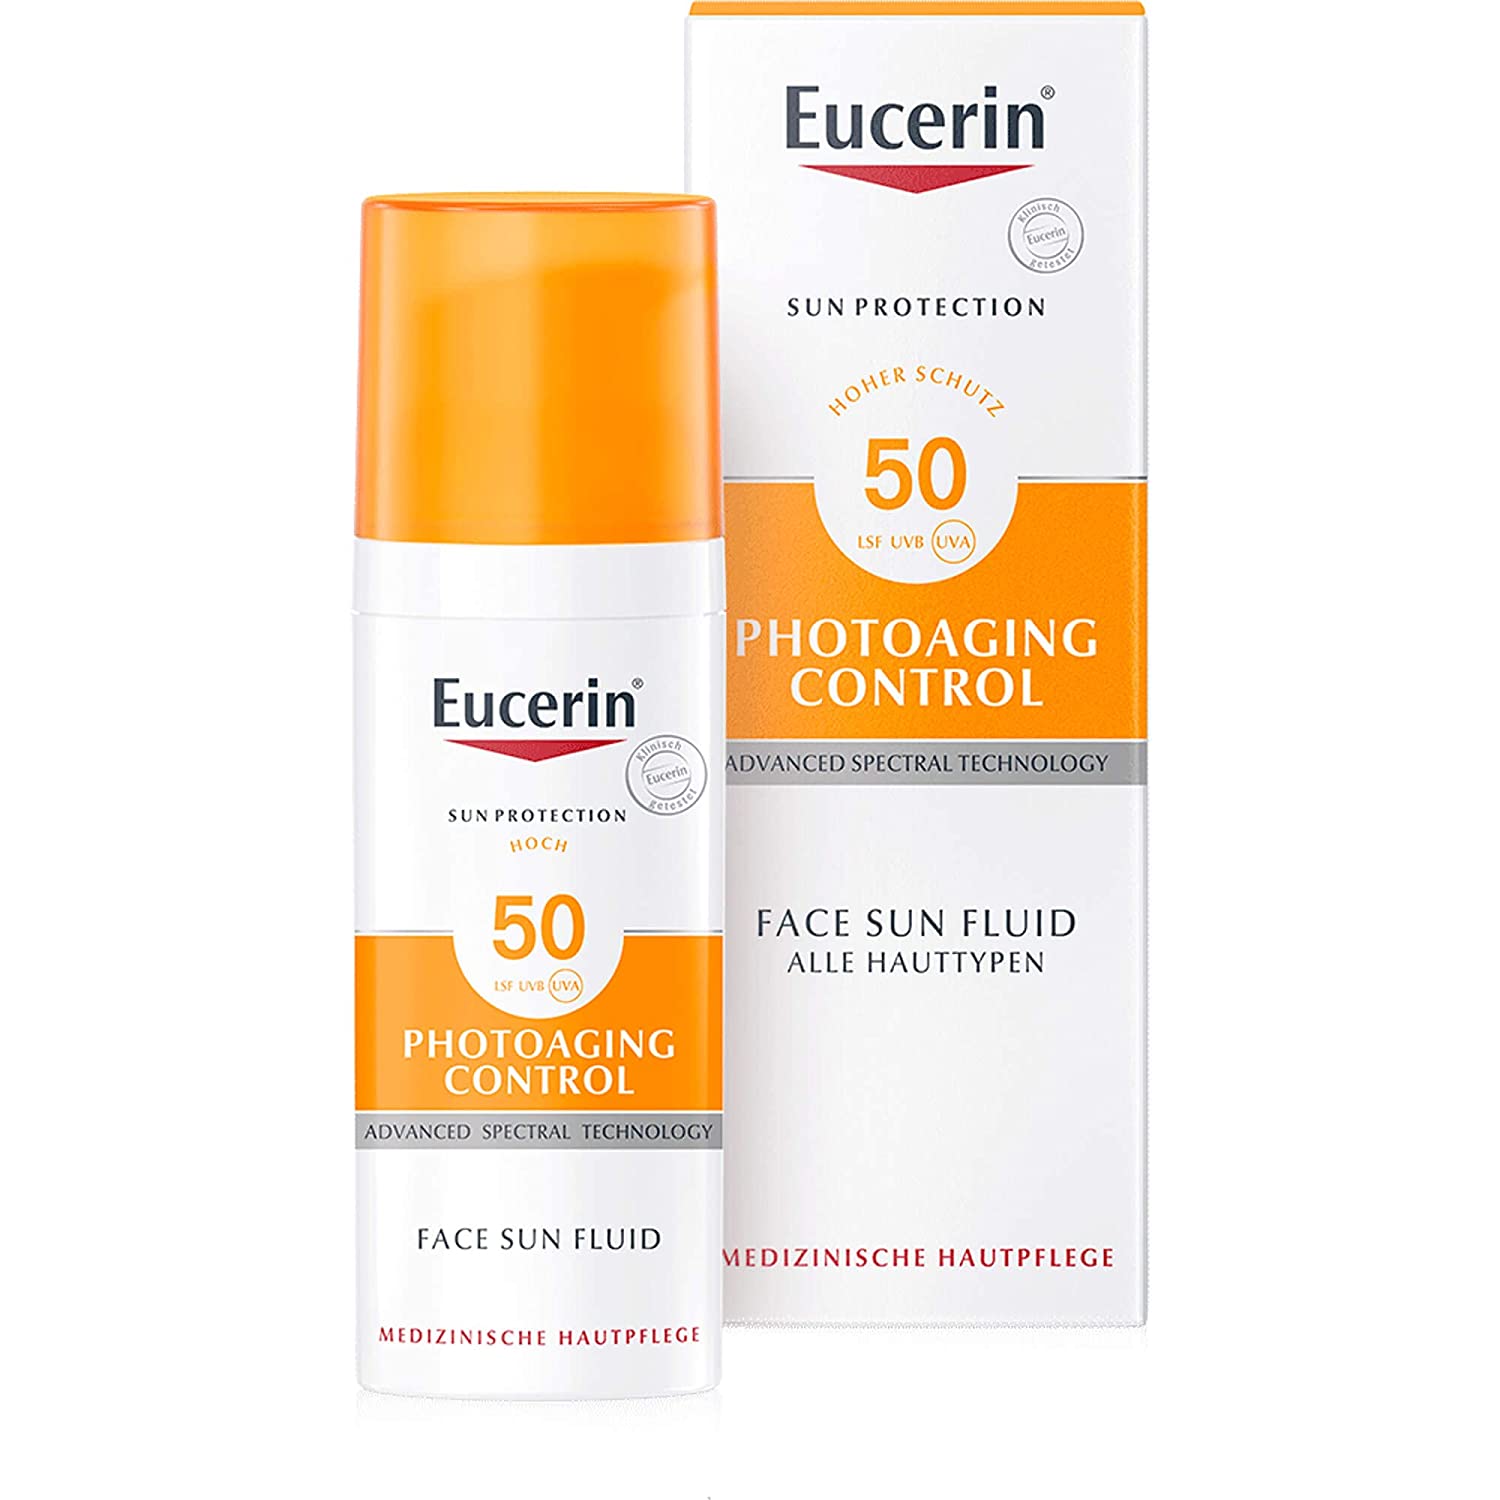 Eucerin Photoaging Control Face Sun Fluid SPF 50, 50 ml Fluid